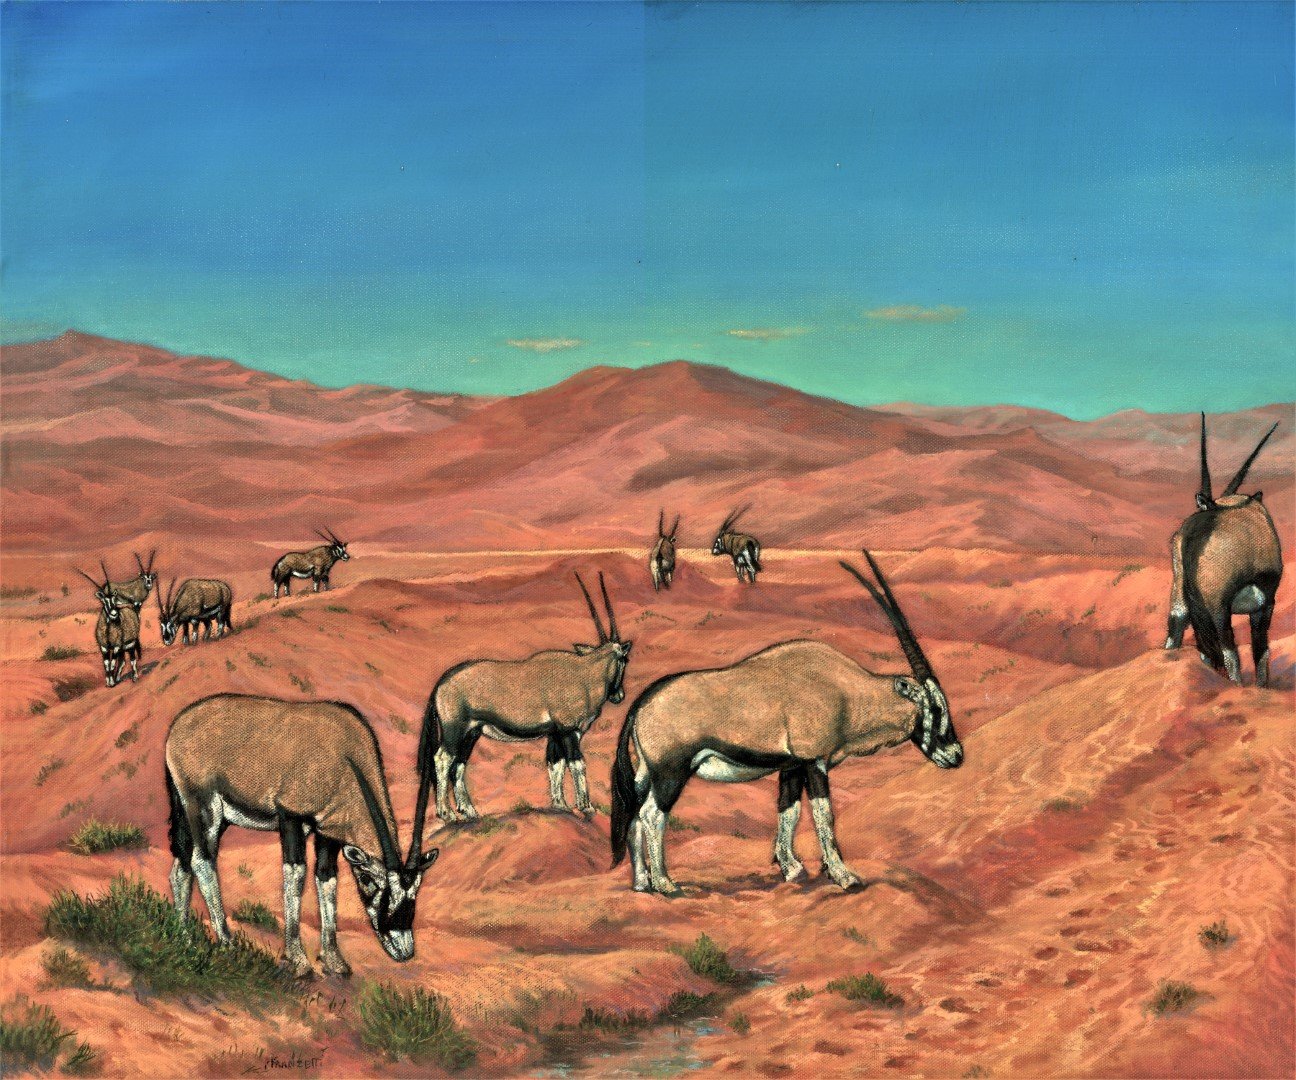 Namibian desert revised (2)(Large).jpg